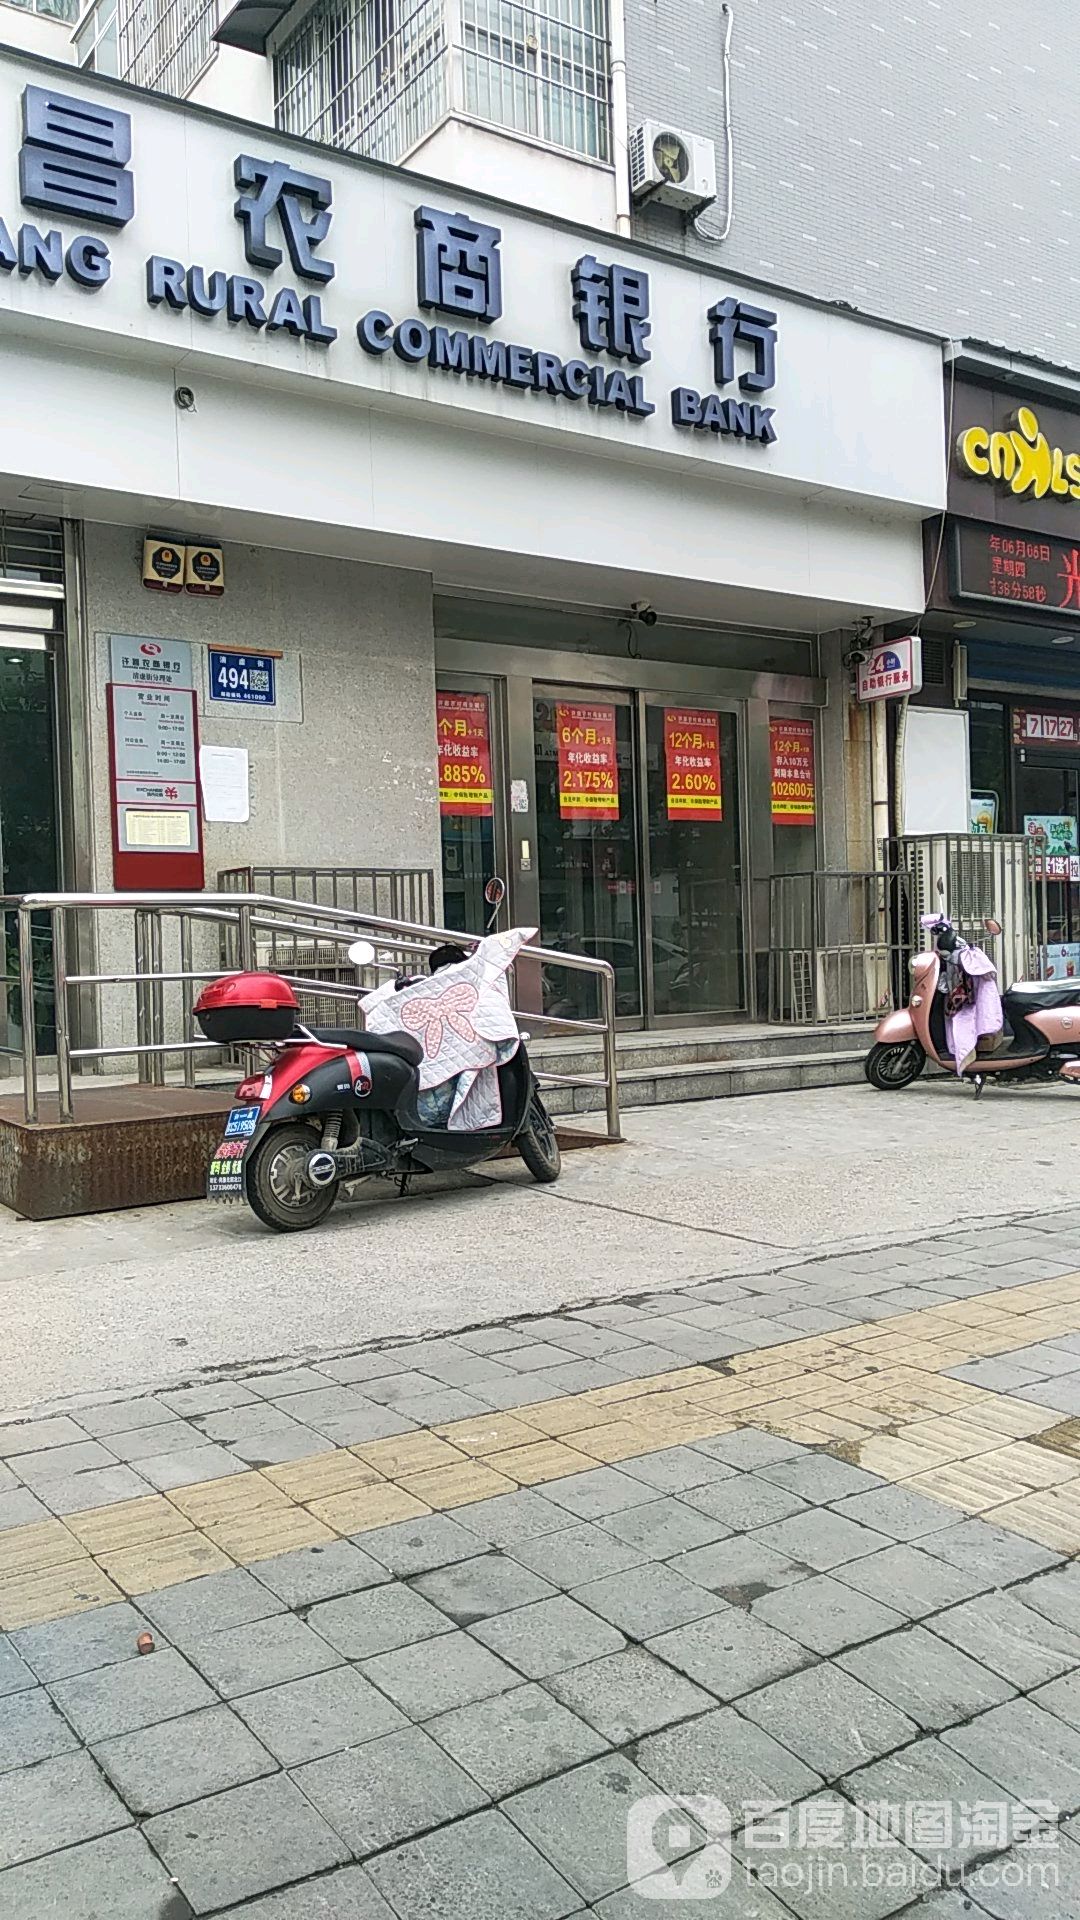 许昌魏都农村商业银行ATM